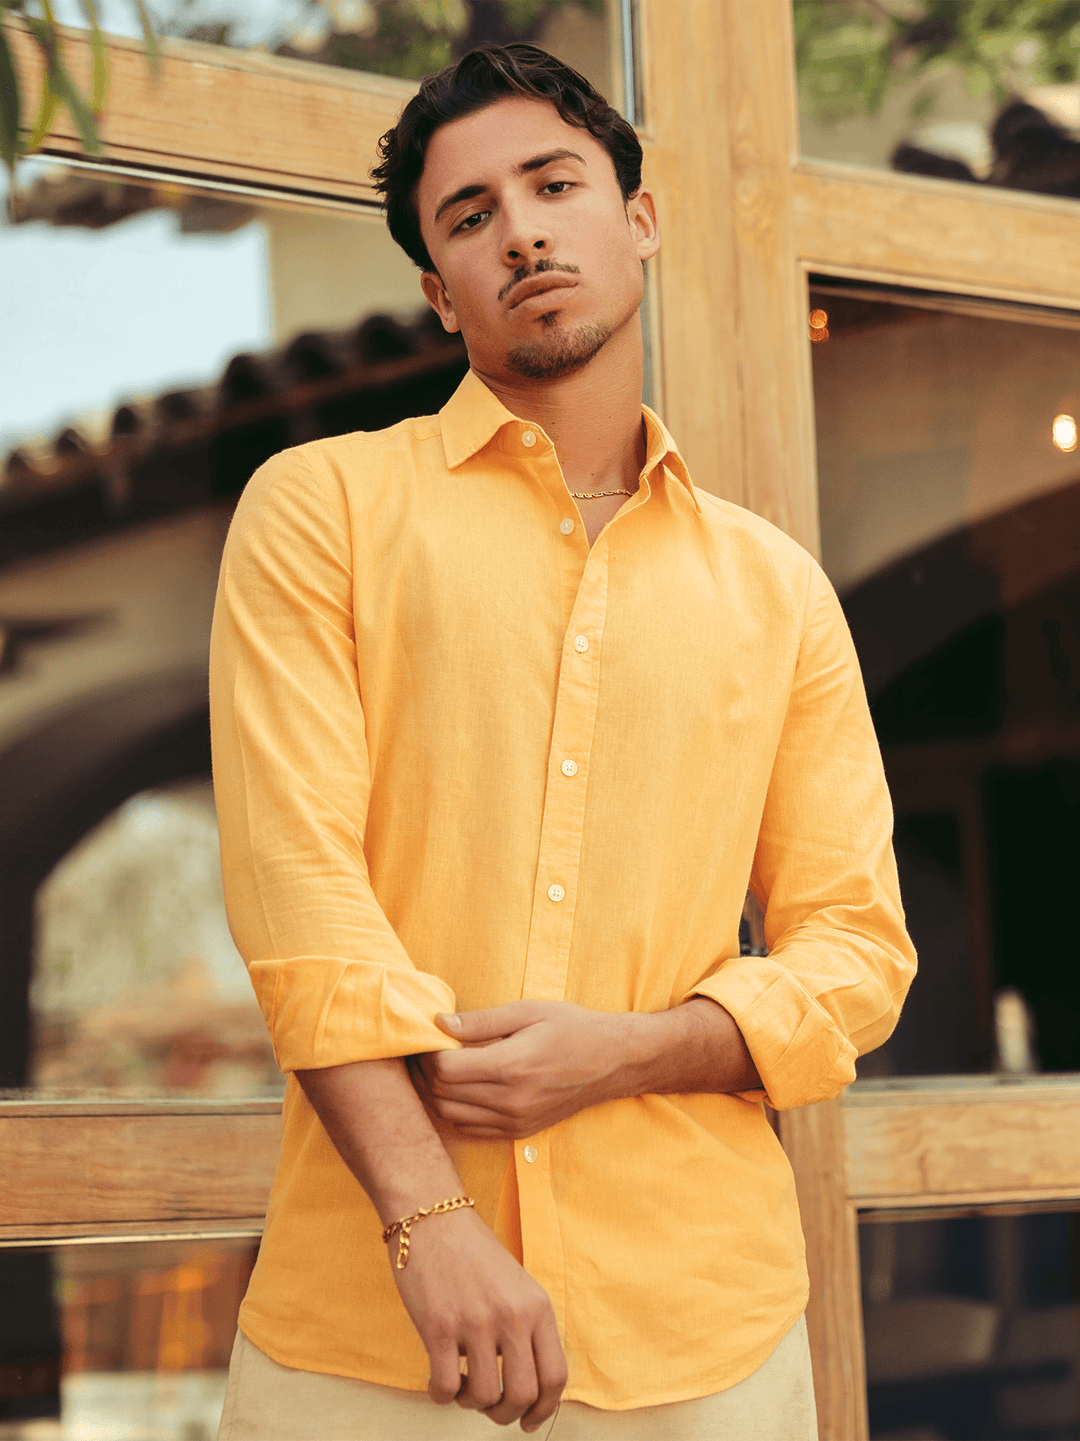 Zhivago x Nuuk Men Linen Shirt Light Orange Linen Shirt